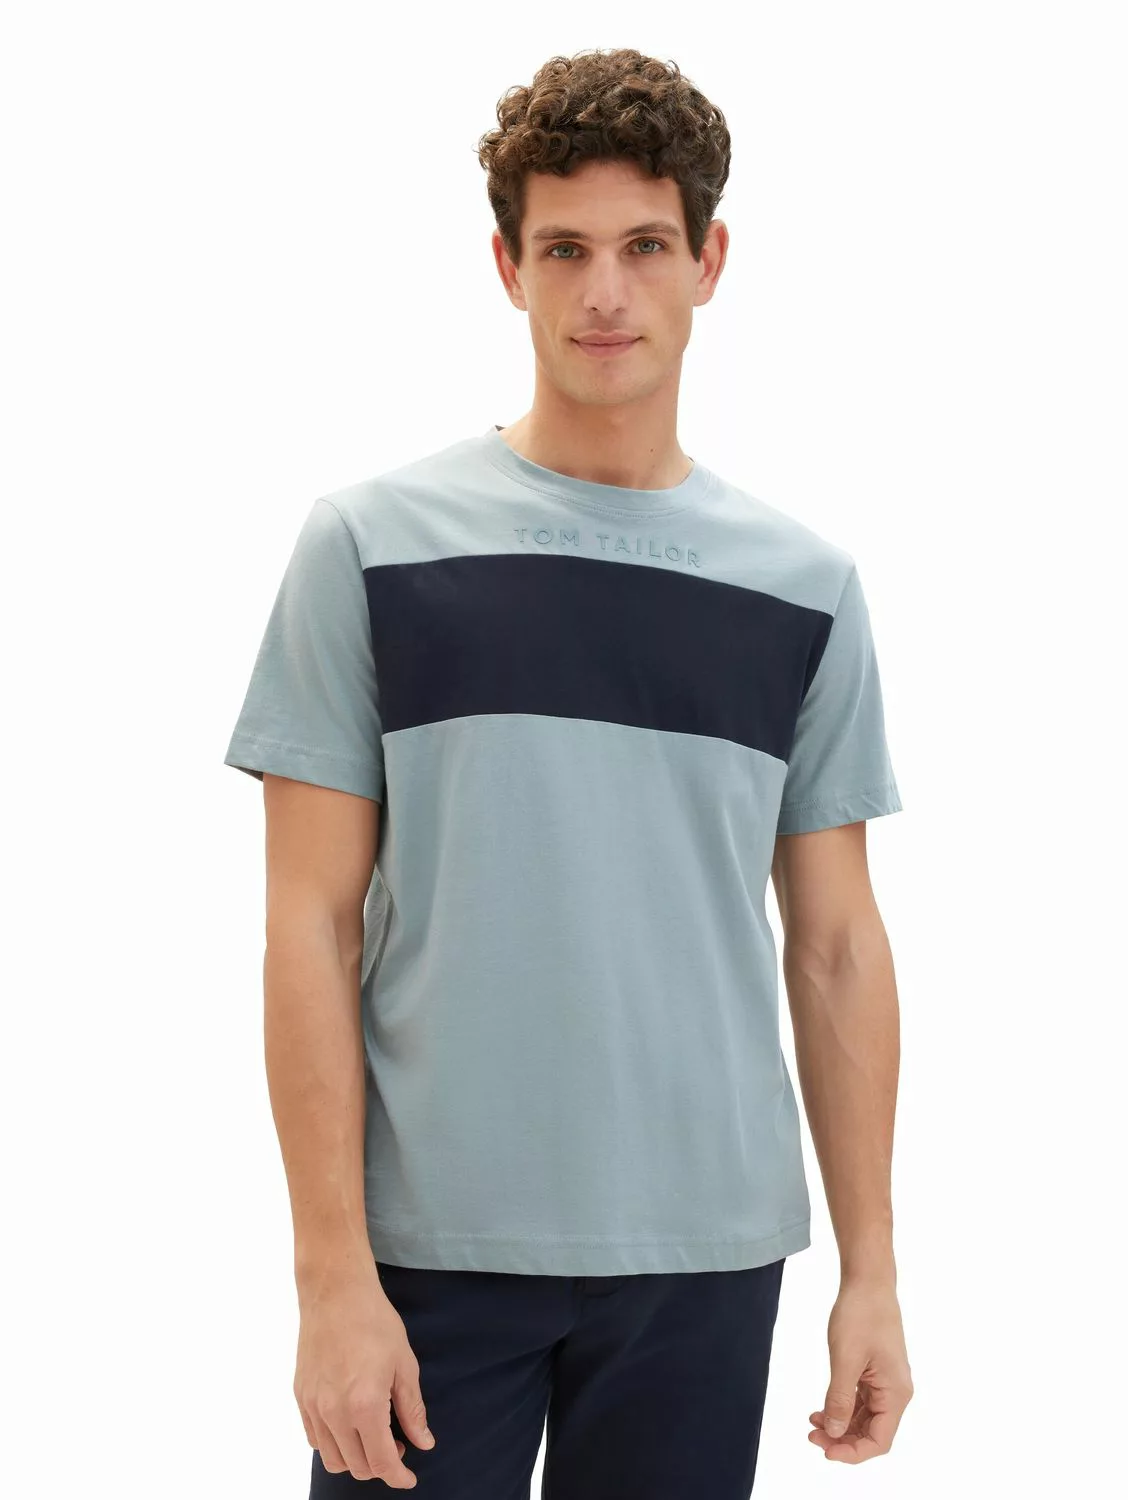 Tom Tailor Herren T-Shirt CUTLINE - Regular Fit günstig online kaufen